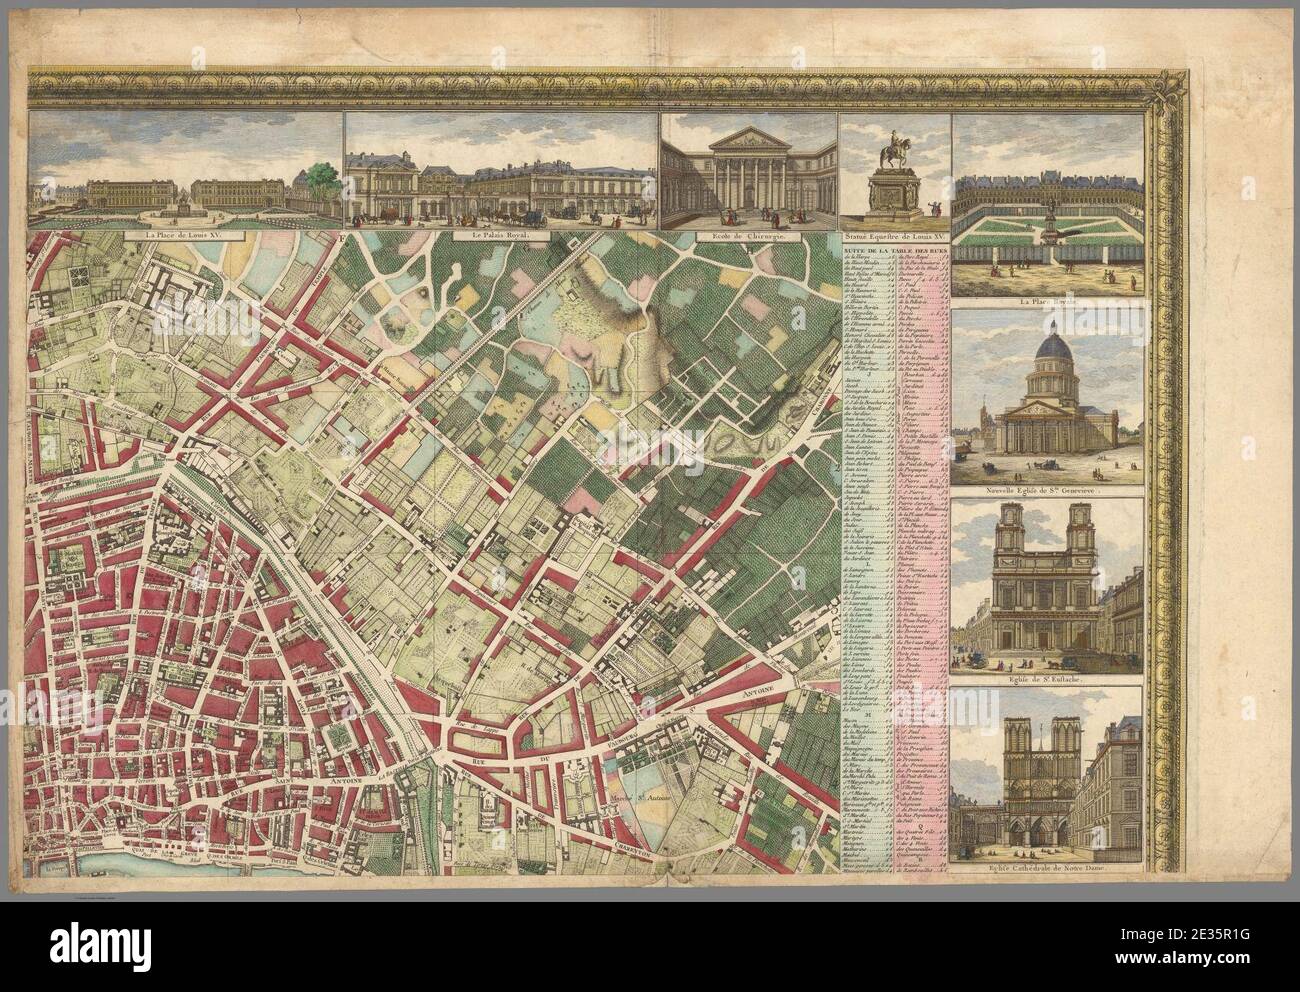 M. Pichon, Nouveau plan routier de la ville et faubourgs de Paris 2, 1784 - David Rumsey. Stock Photo